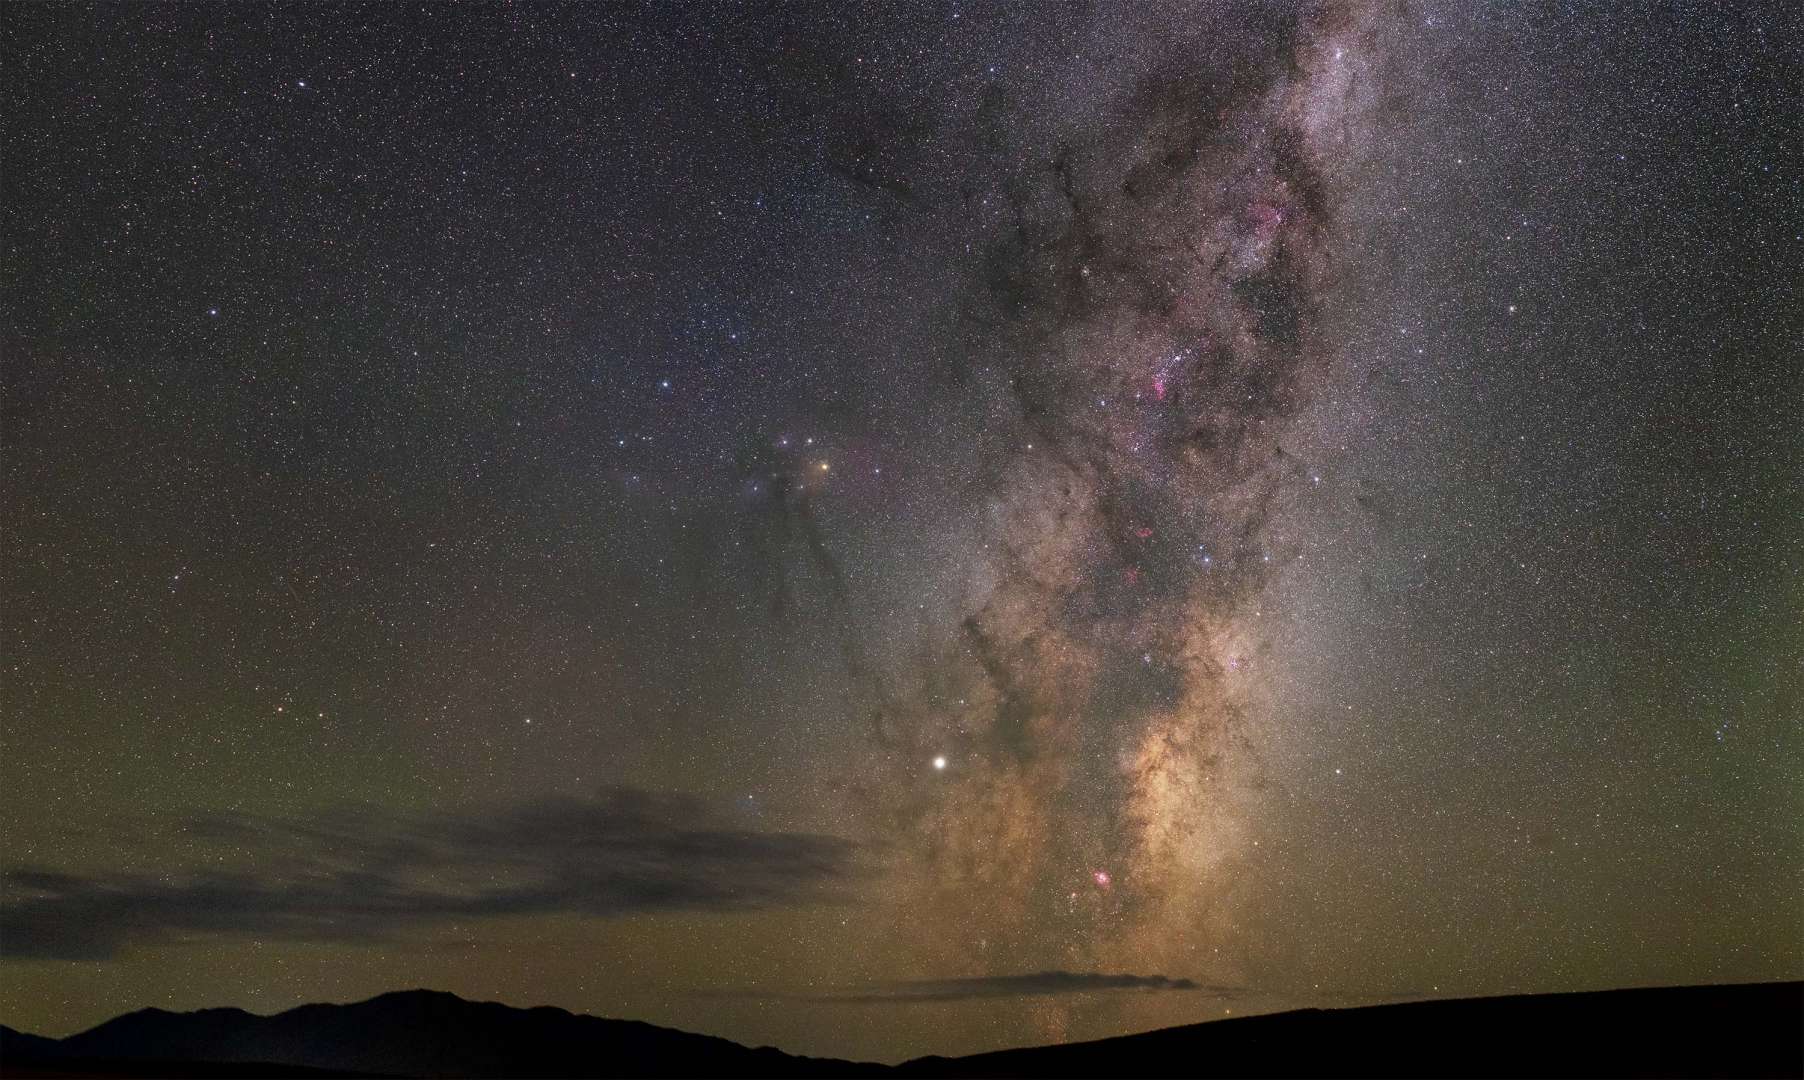 Milky Way Kiwi